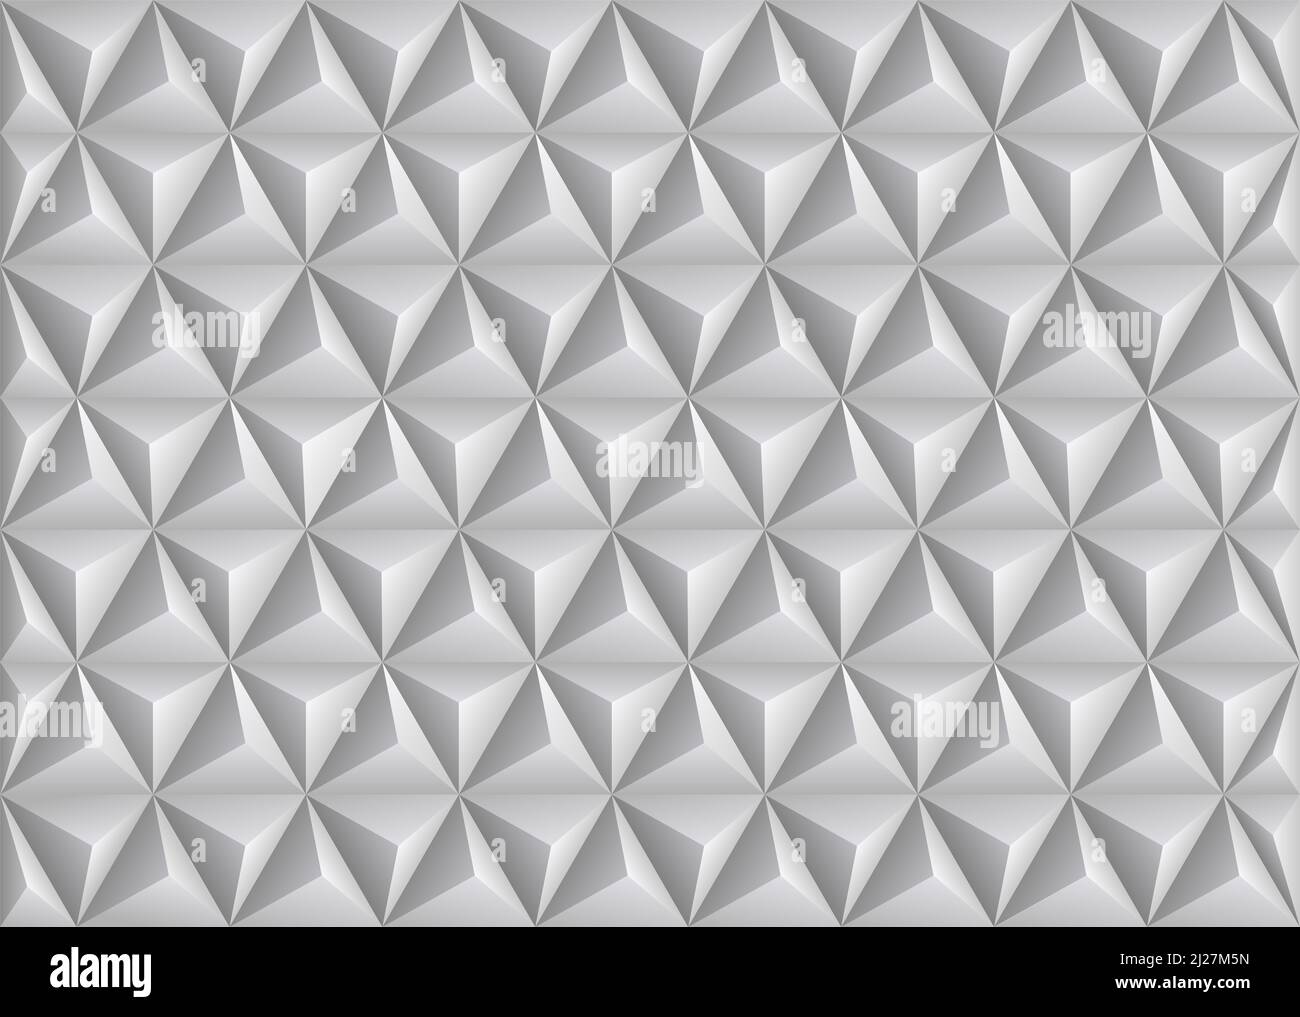 Motif triangulaire géométrique - arrière-plan abstrait - illustration vectorielle Banque D'Images